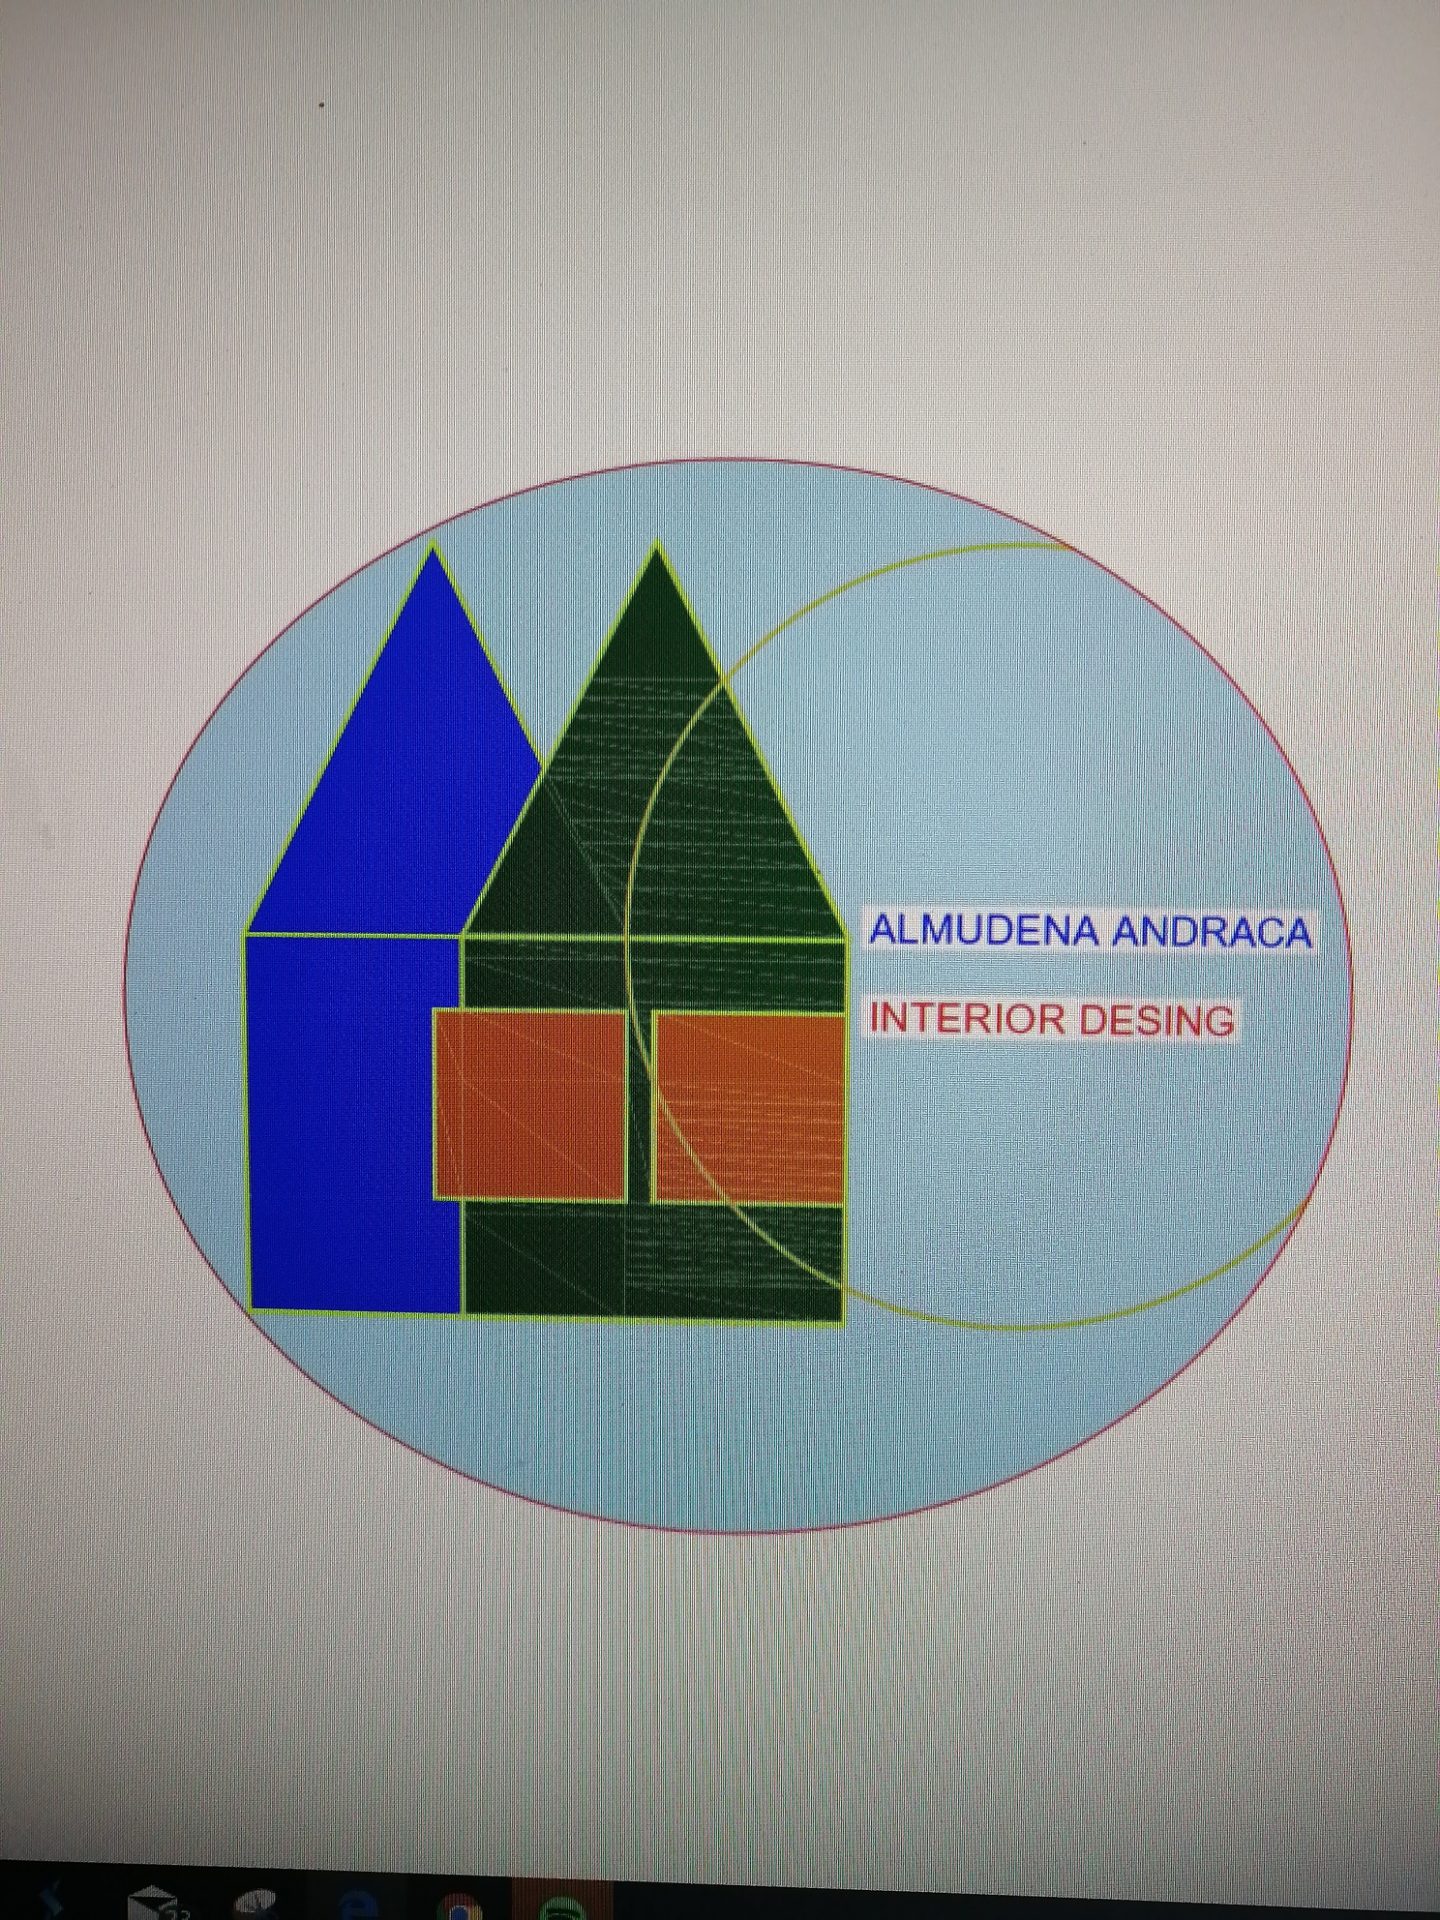 Logotipo Almudena Andraca, interior design.